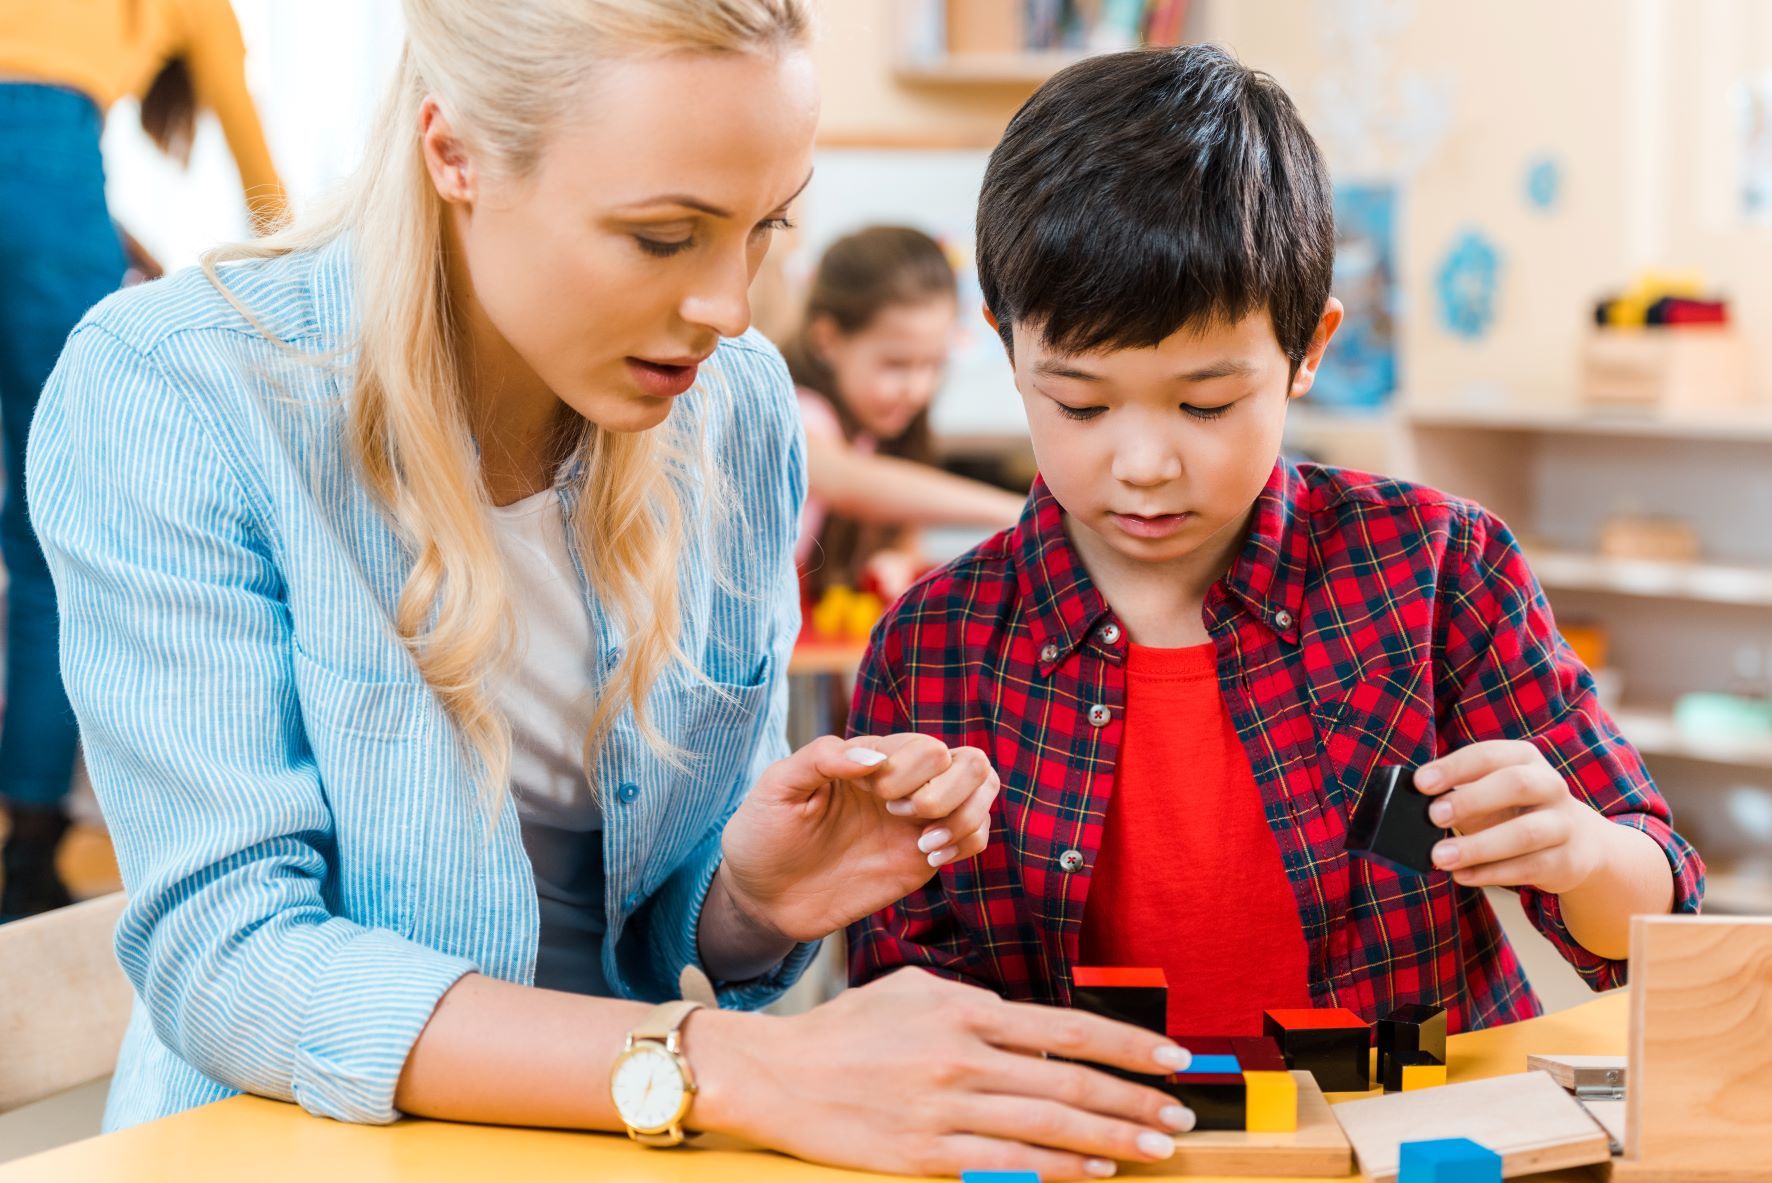 100 ACTIVIDADES MONTESSORI DE 0-3 AÑOS - Aprendiendo con Montessori